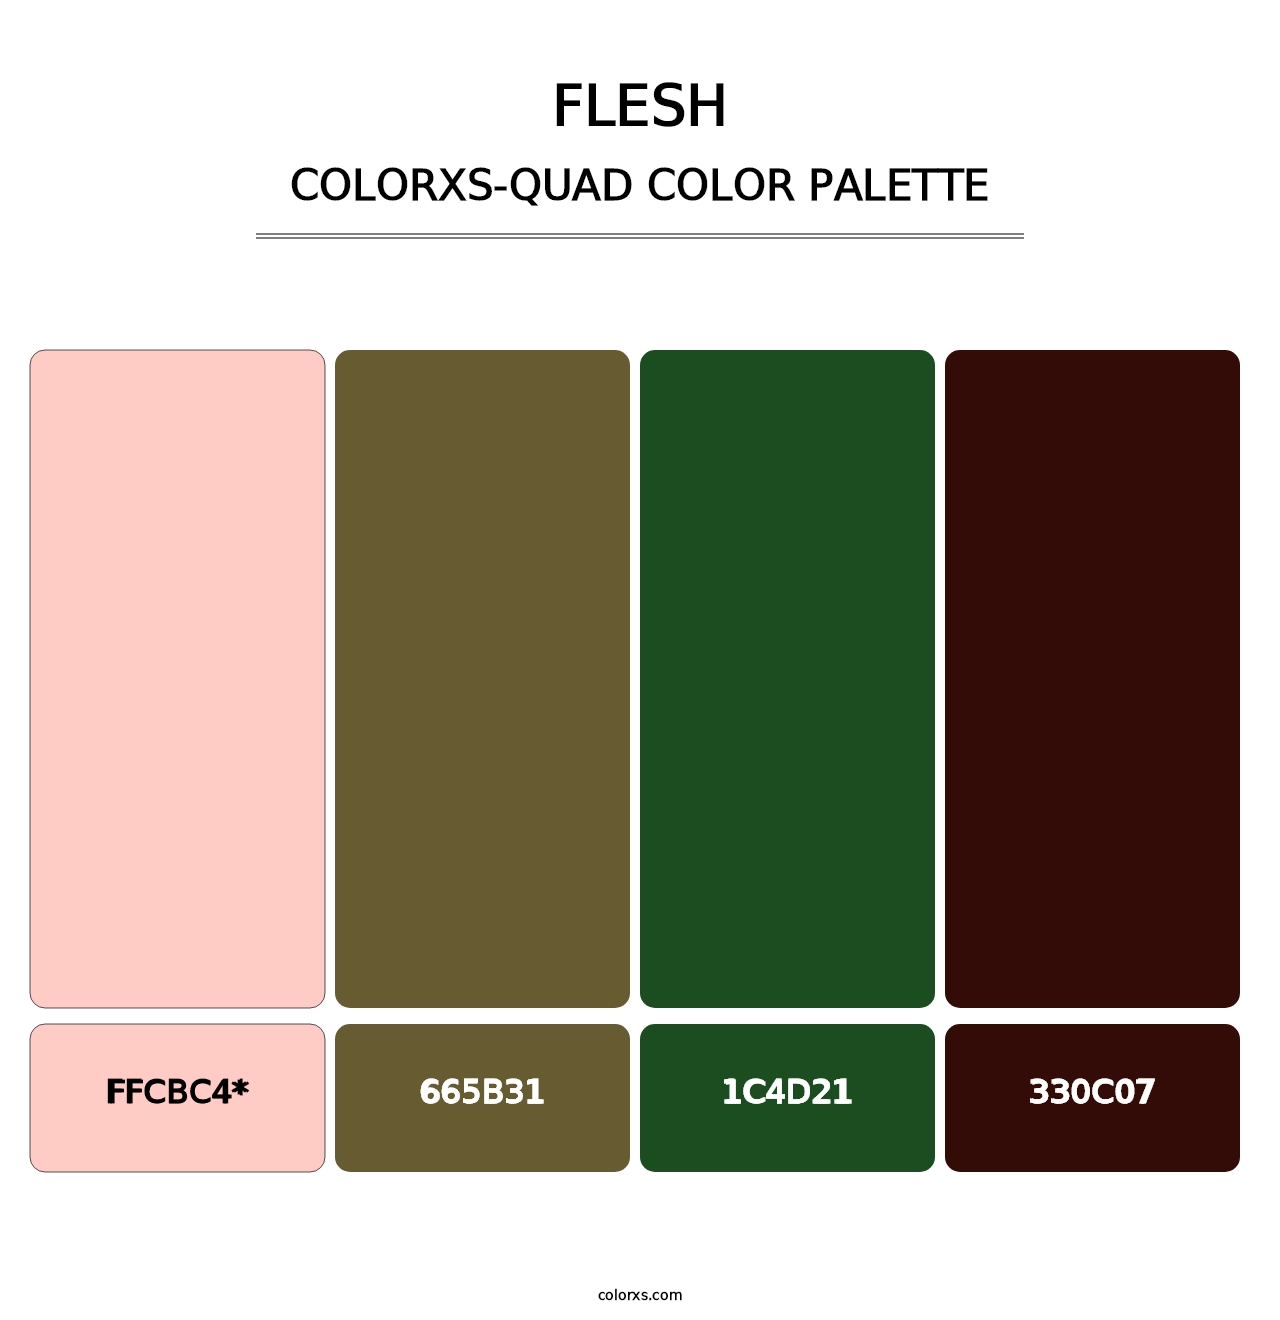 Flesh - Colorxs Quad Palette